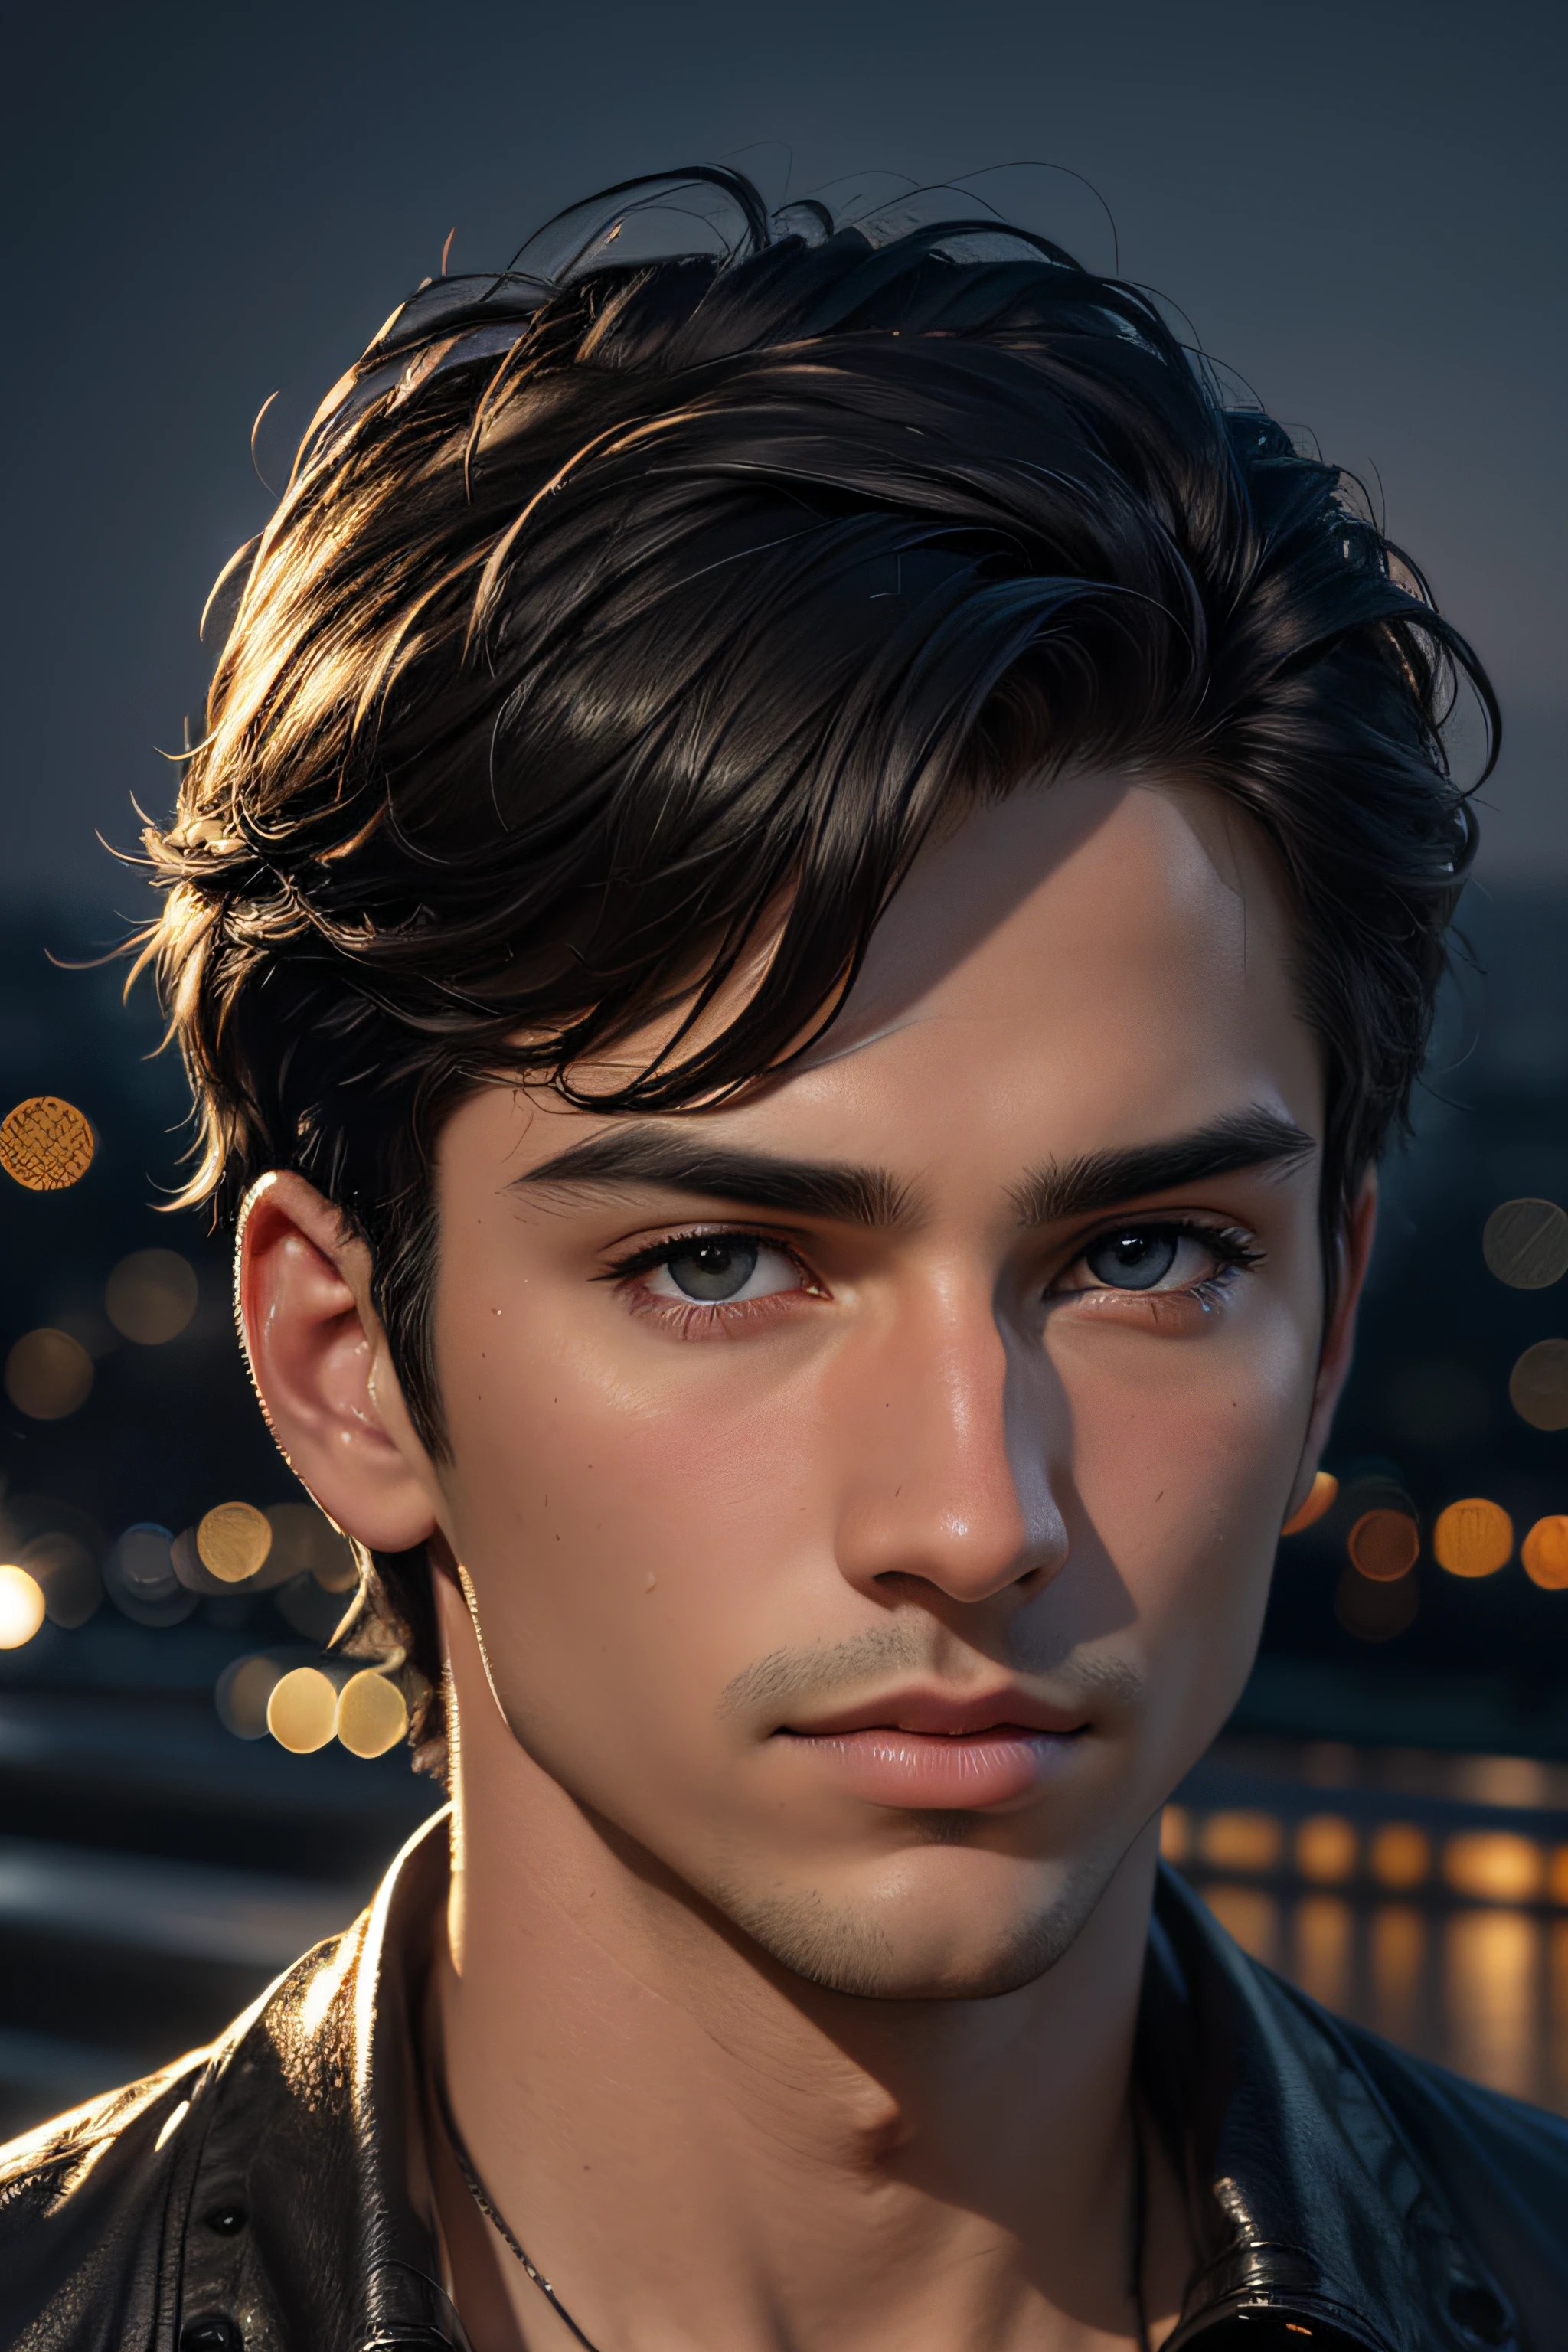 beste Qualität, Meisterwerk, ultrahohe Auflösung, (fotorealistisch:1.4), detailliertes Gesicht, detaillierte Augen, RAW-Foto, junger hübscher Mann, Schwarzes Haar, (nachtstadthintergrund:1.2)